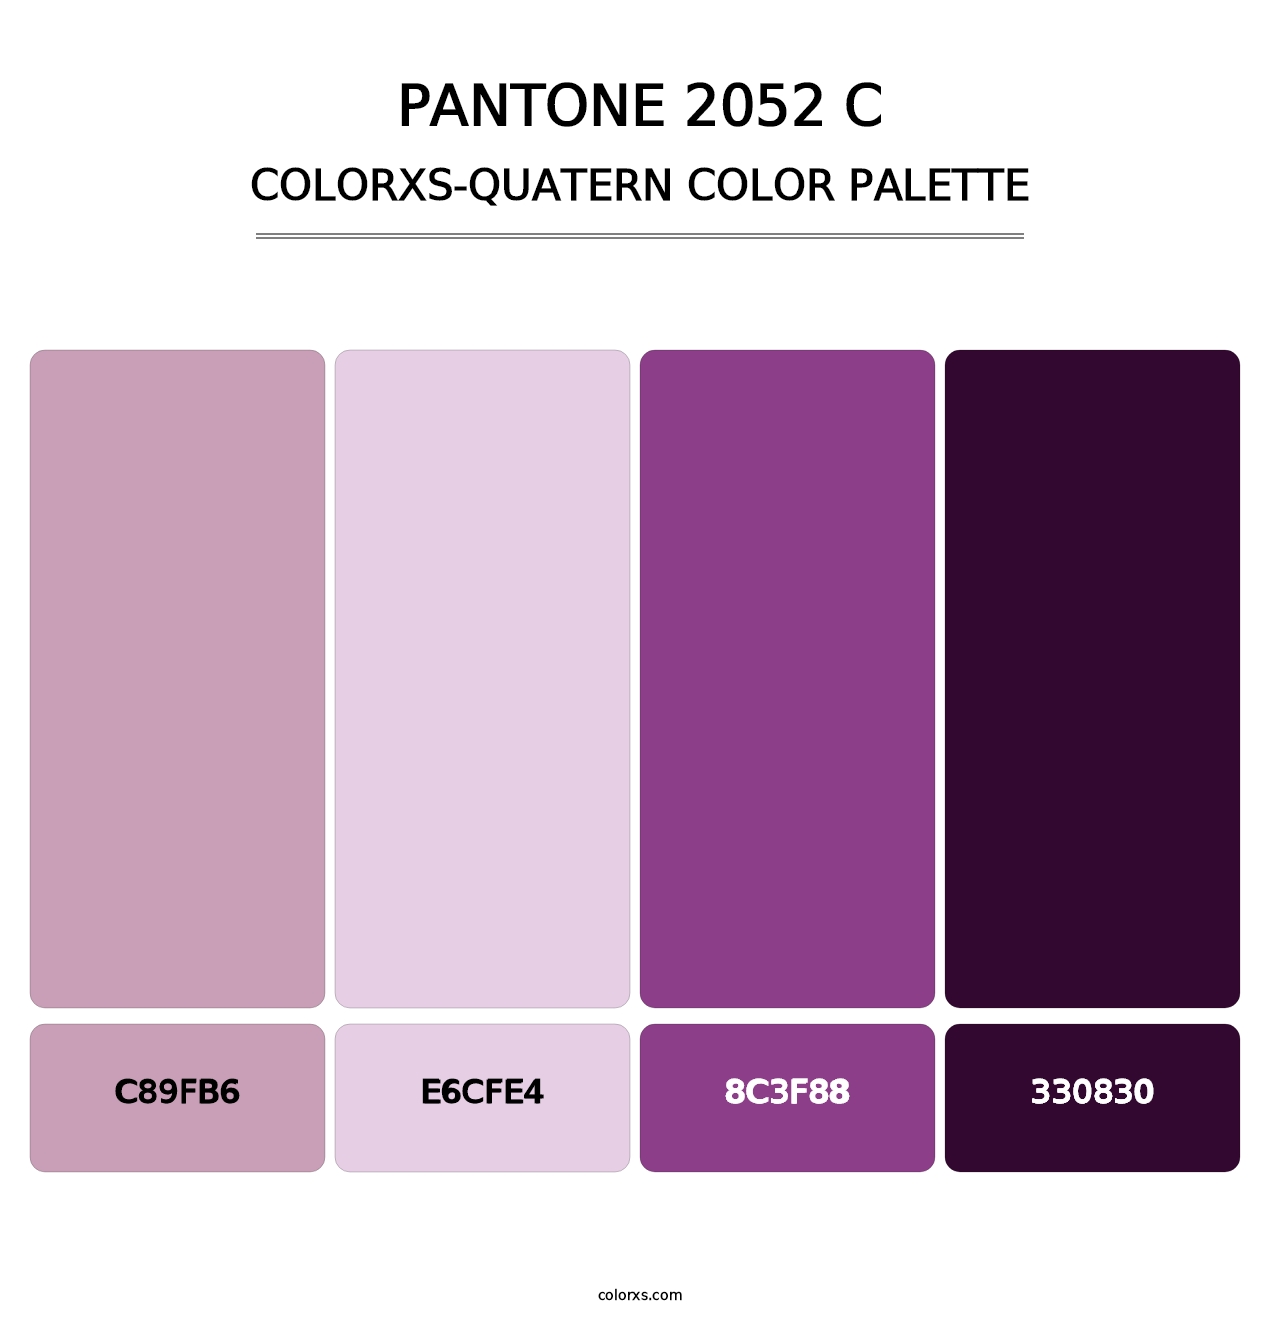 PANTONE 2052 C - Colorxs Quatern Palette